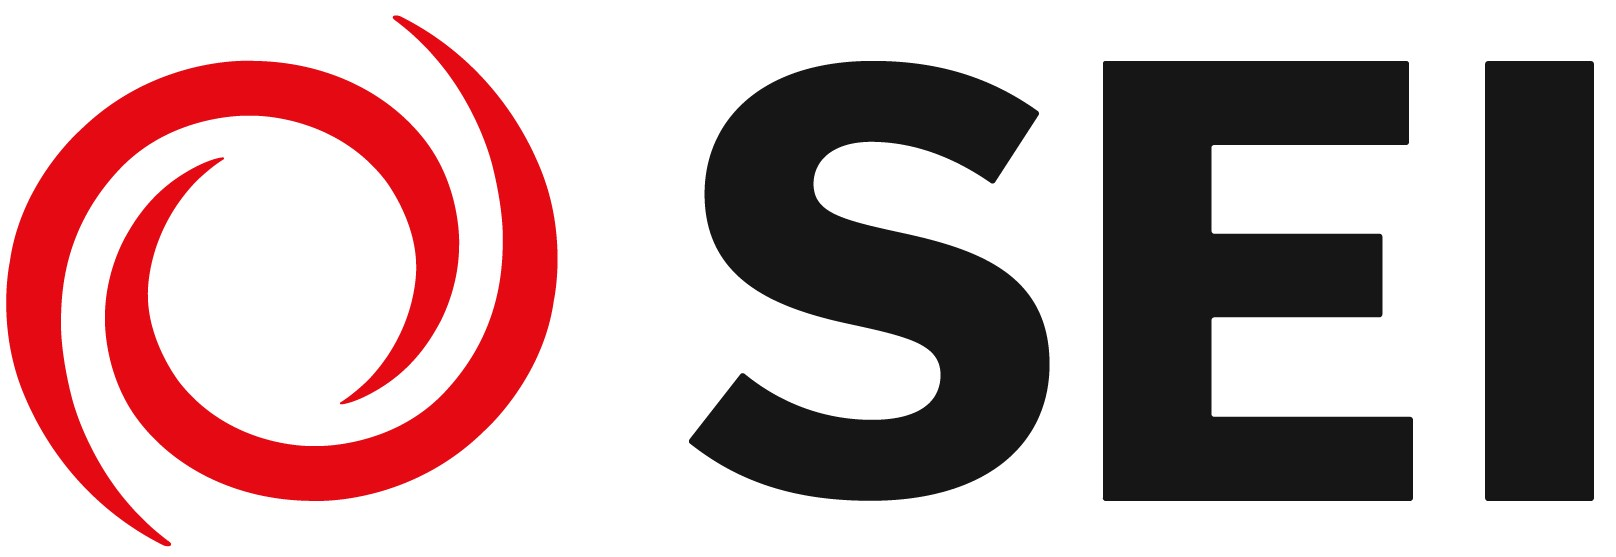 Systems Evolution, Inc. (SEI) Company Logo